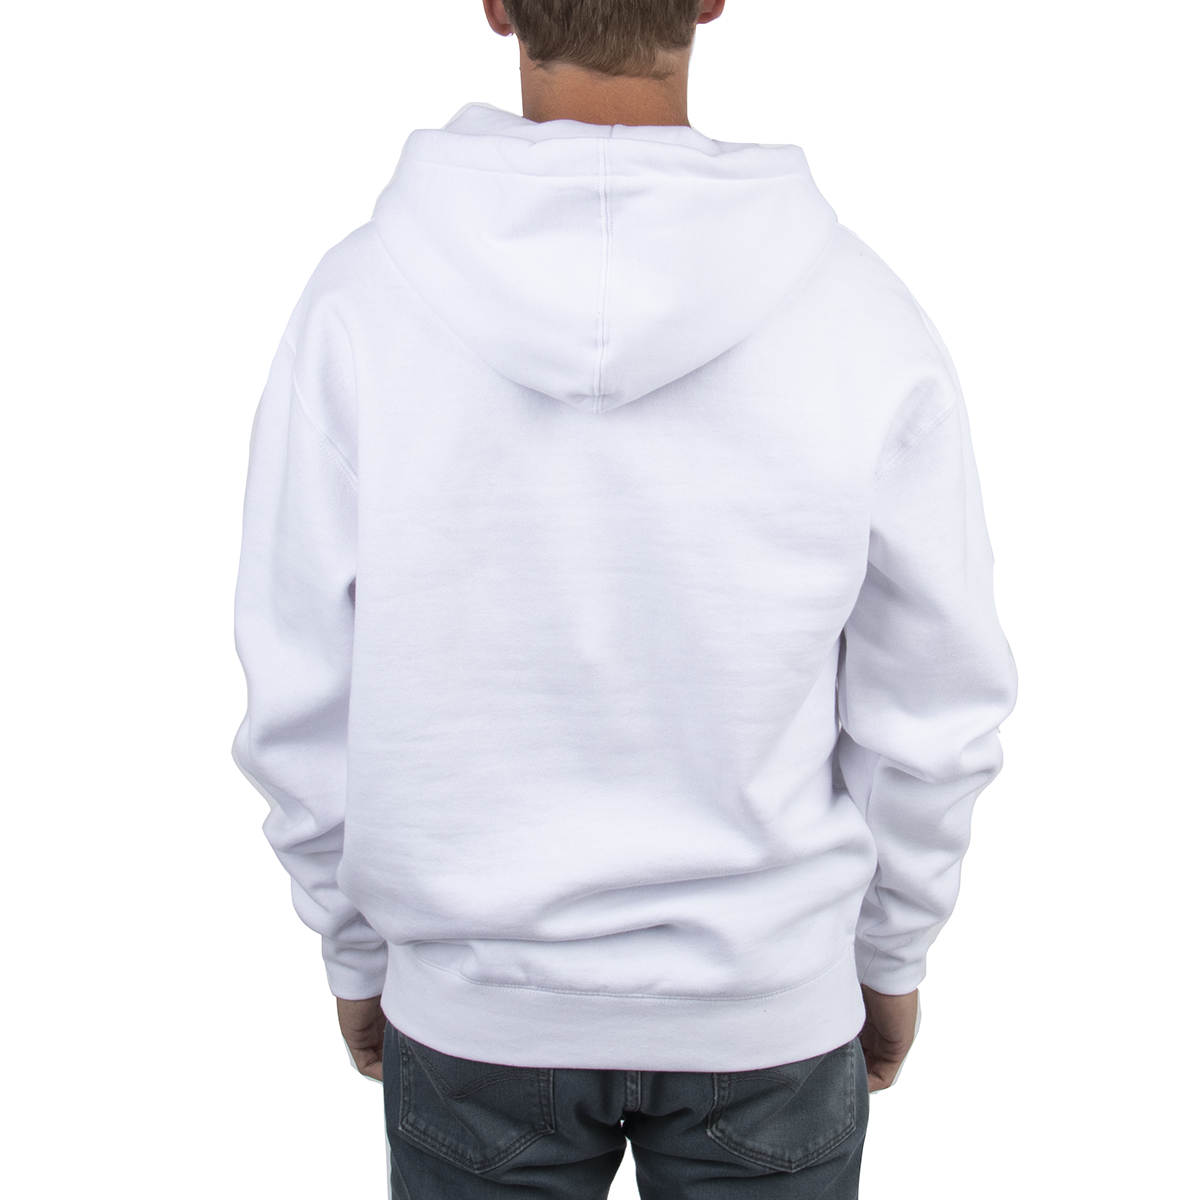 Heavyweight Hooded Sweatshirt - White